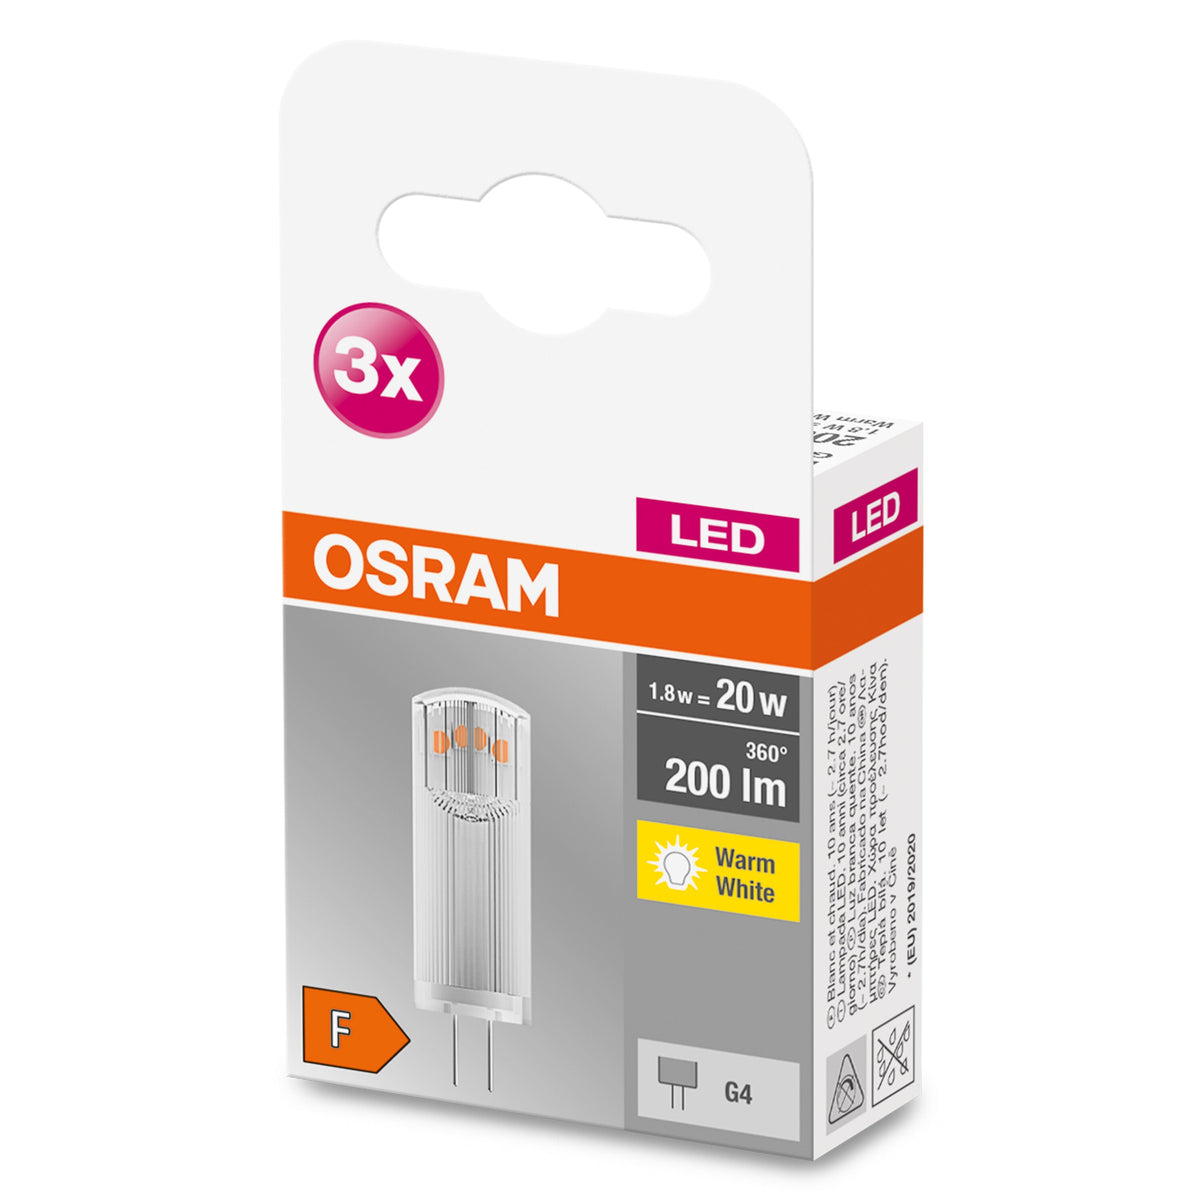 OSRAM LED Base lampe à culot à broches LED 12V (ex 20W) 1,8W / 2700K blanc chaud PIN G4 pack de 3